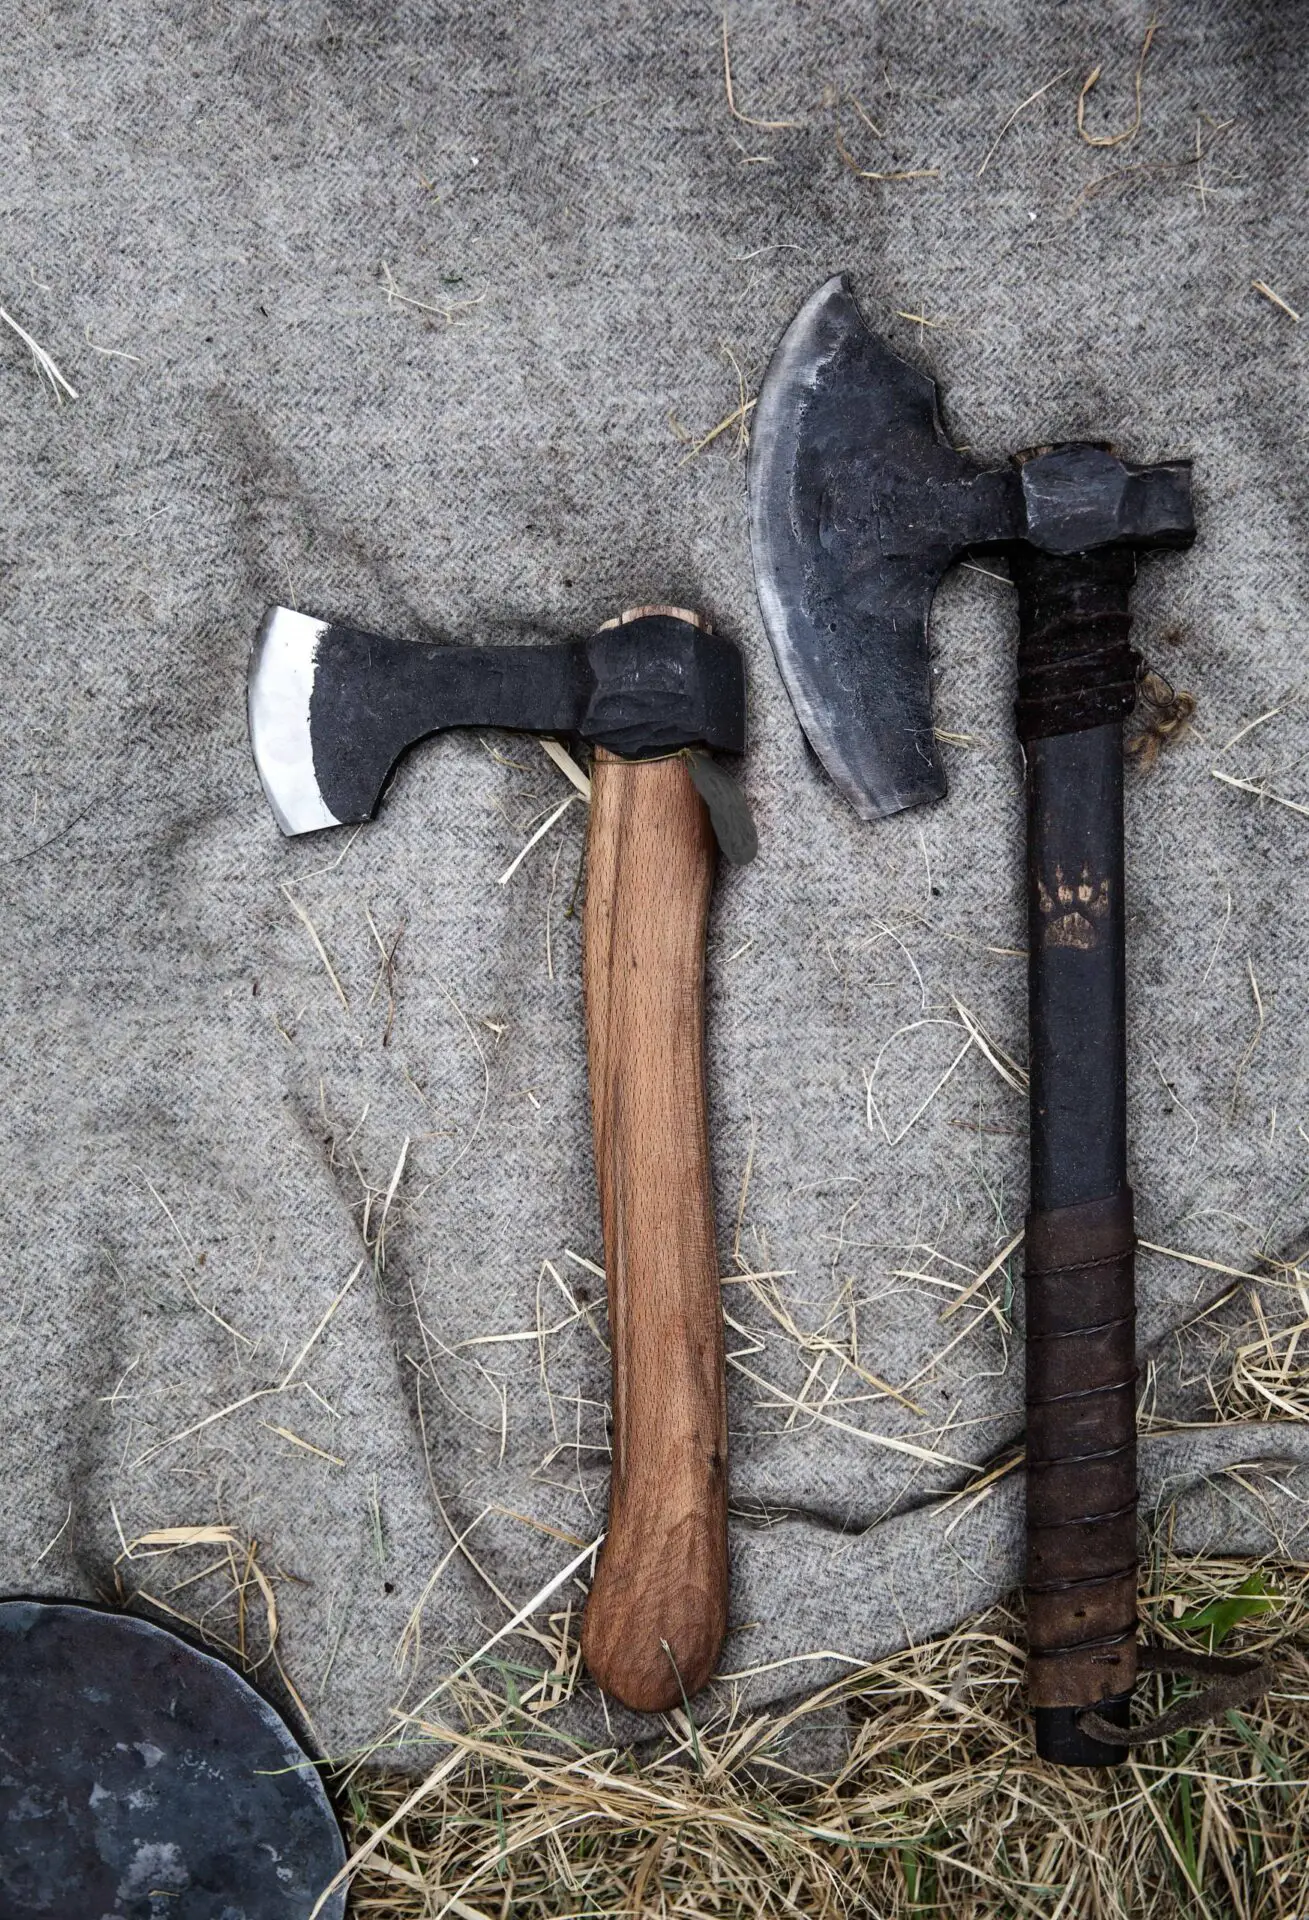 Old axe head types